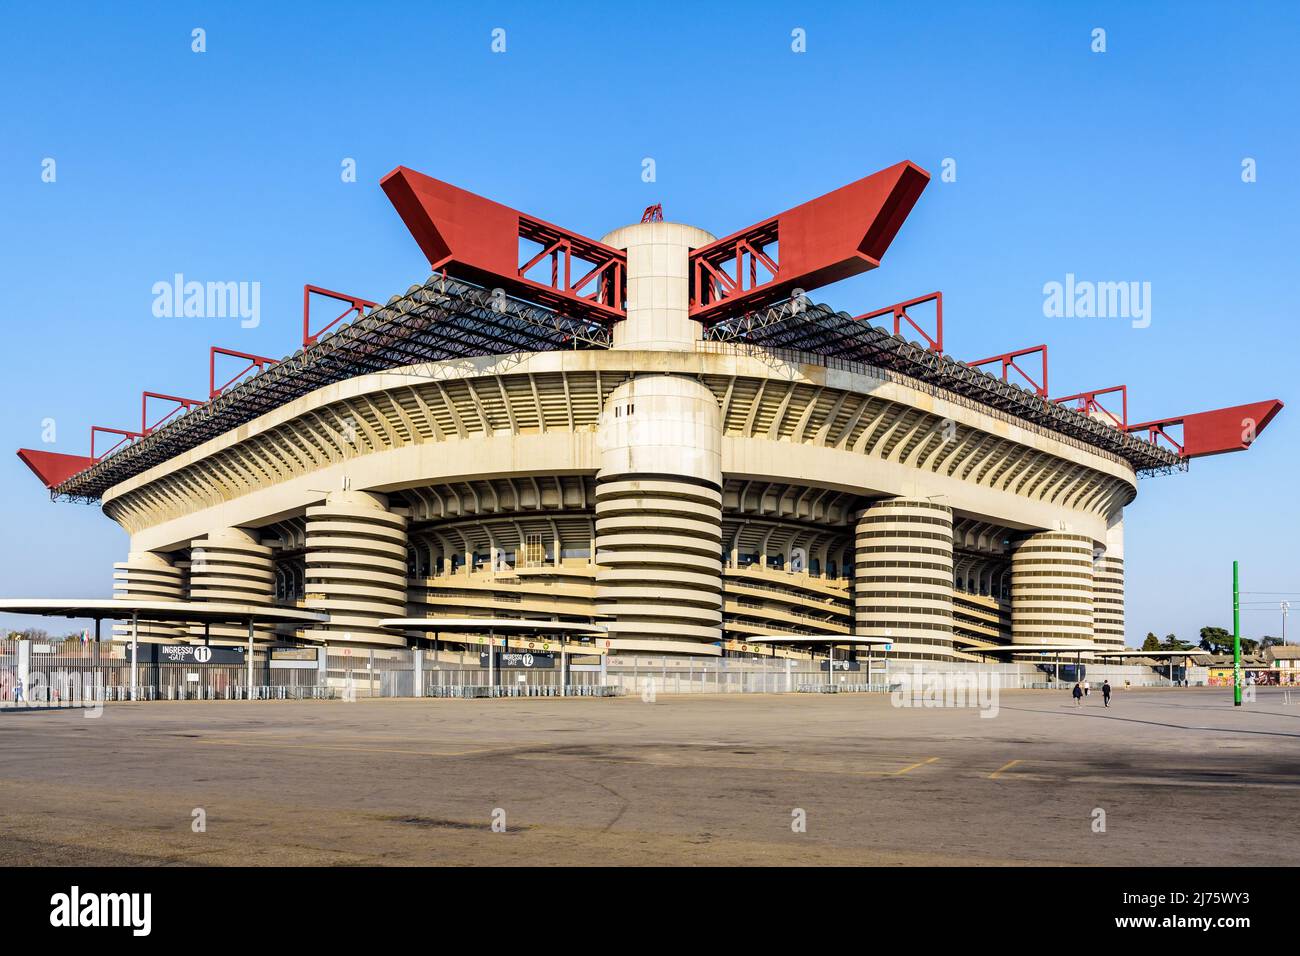 Vista general del estadio de fútbol de San Siro, estadio de los clubes de fútbol Inter de Milán y AC Milán en Milán, Italia. Foto de stock